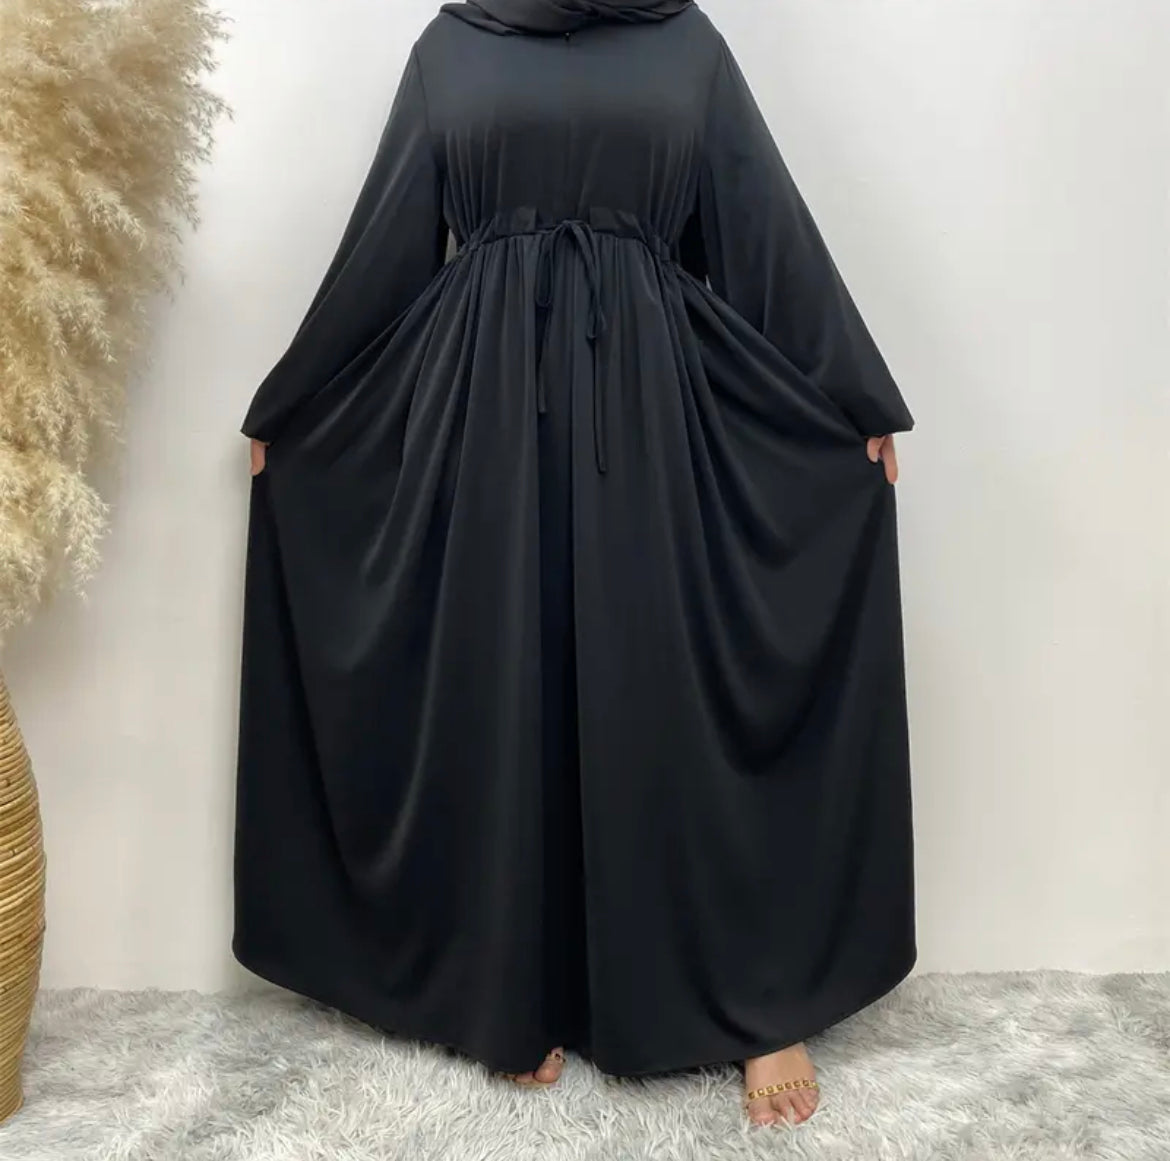 Single Layered Abaya Dress